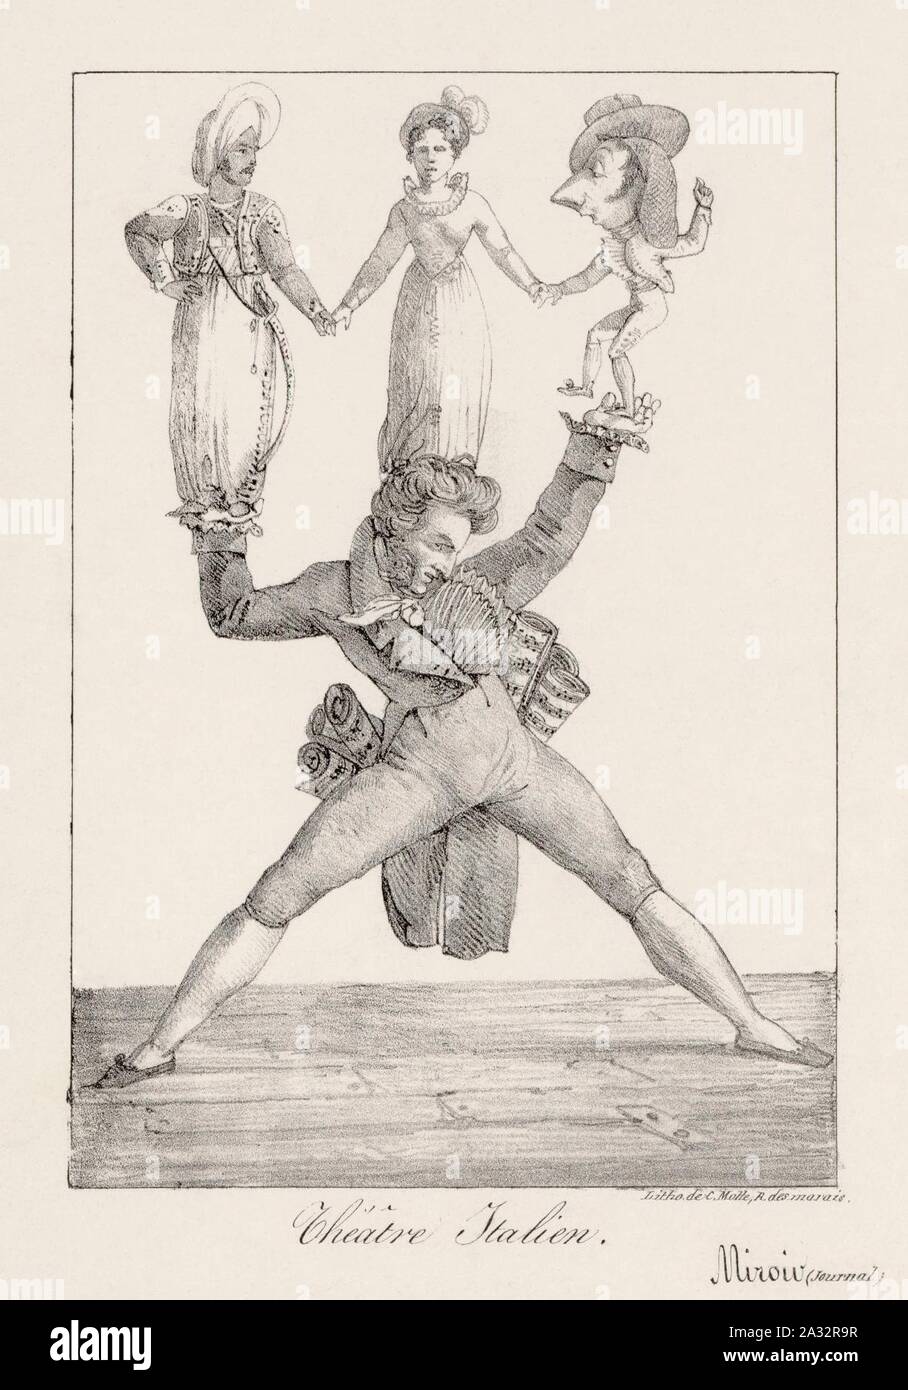 Eugène Delacroix - Rossini soutenant Manuel Garcia dans Otello, Mme Mainvielle-Fodor dans Rosine et Pellegrini dans le Barbier de Séville. Stock Photo